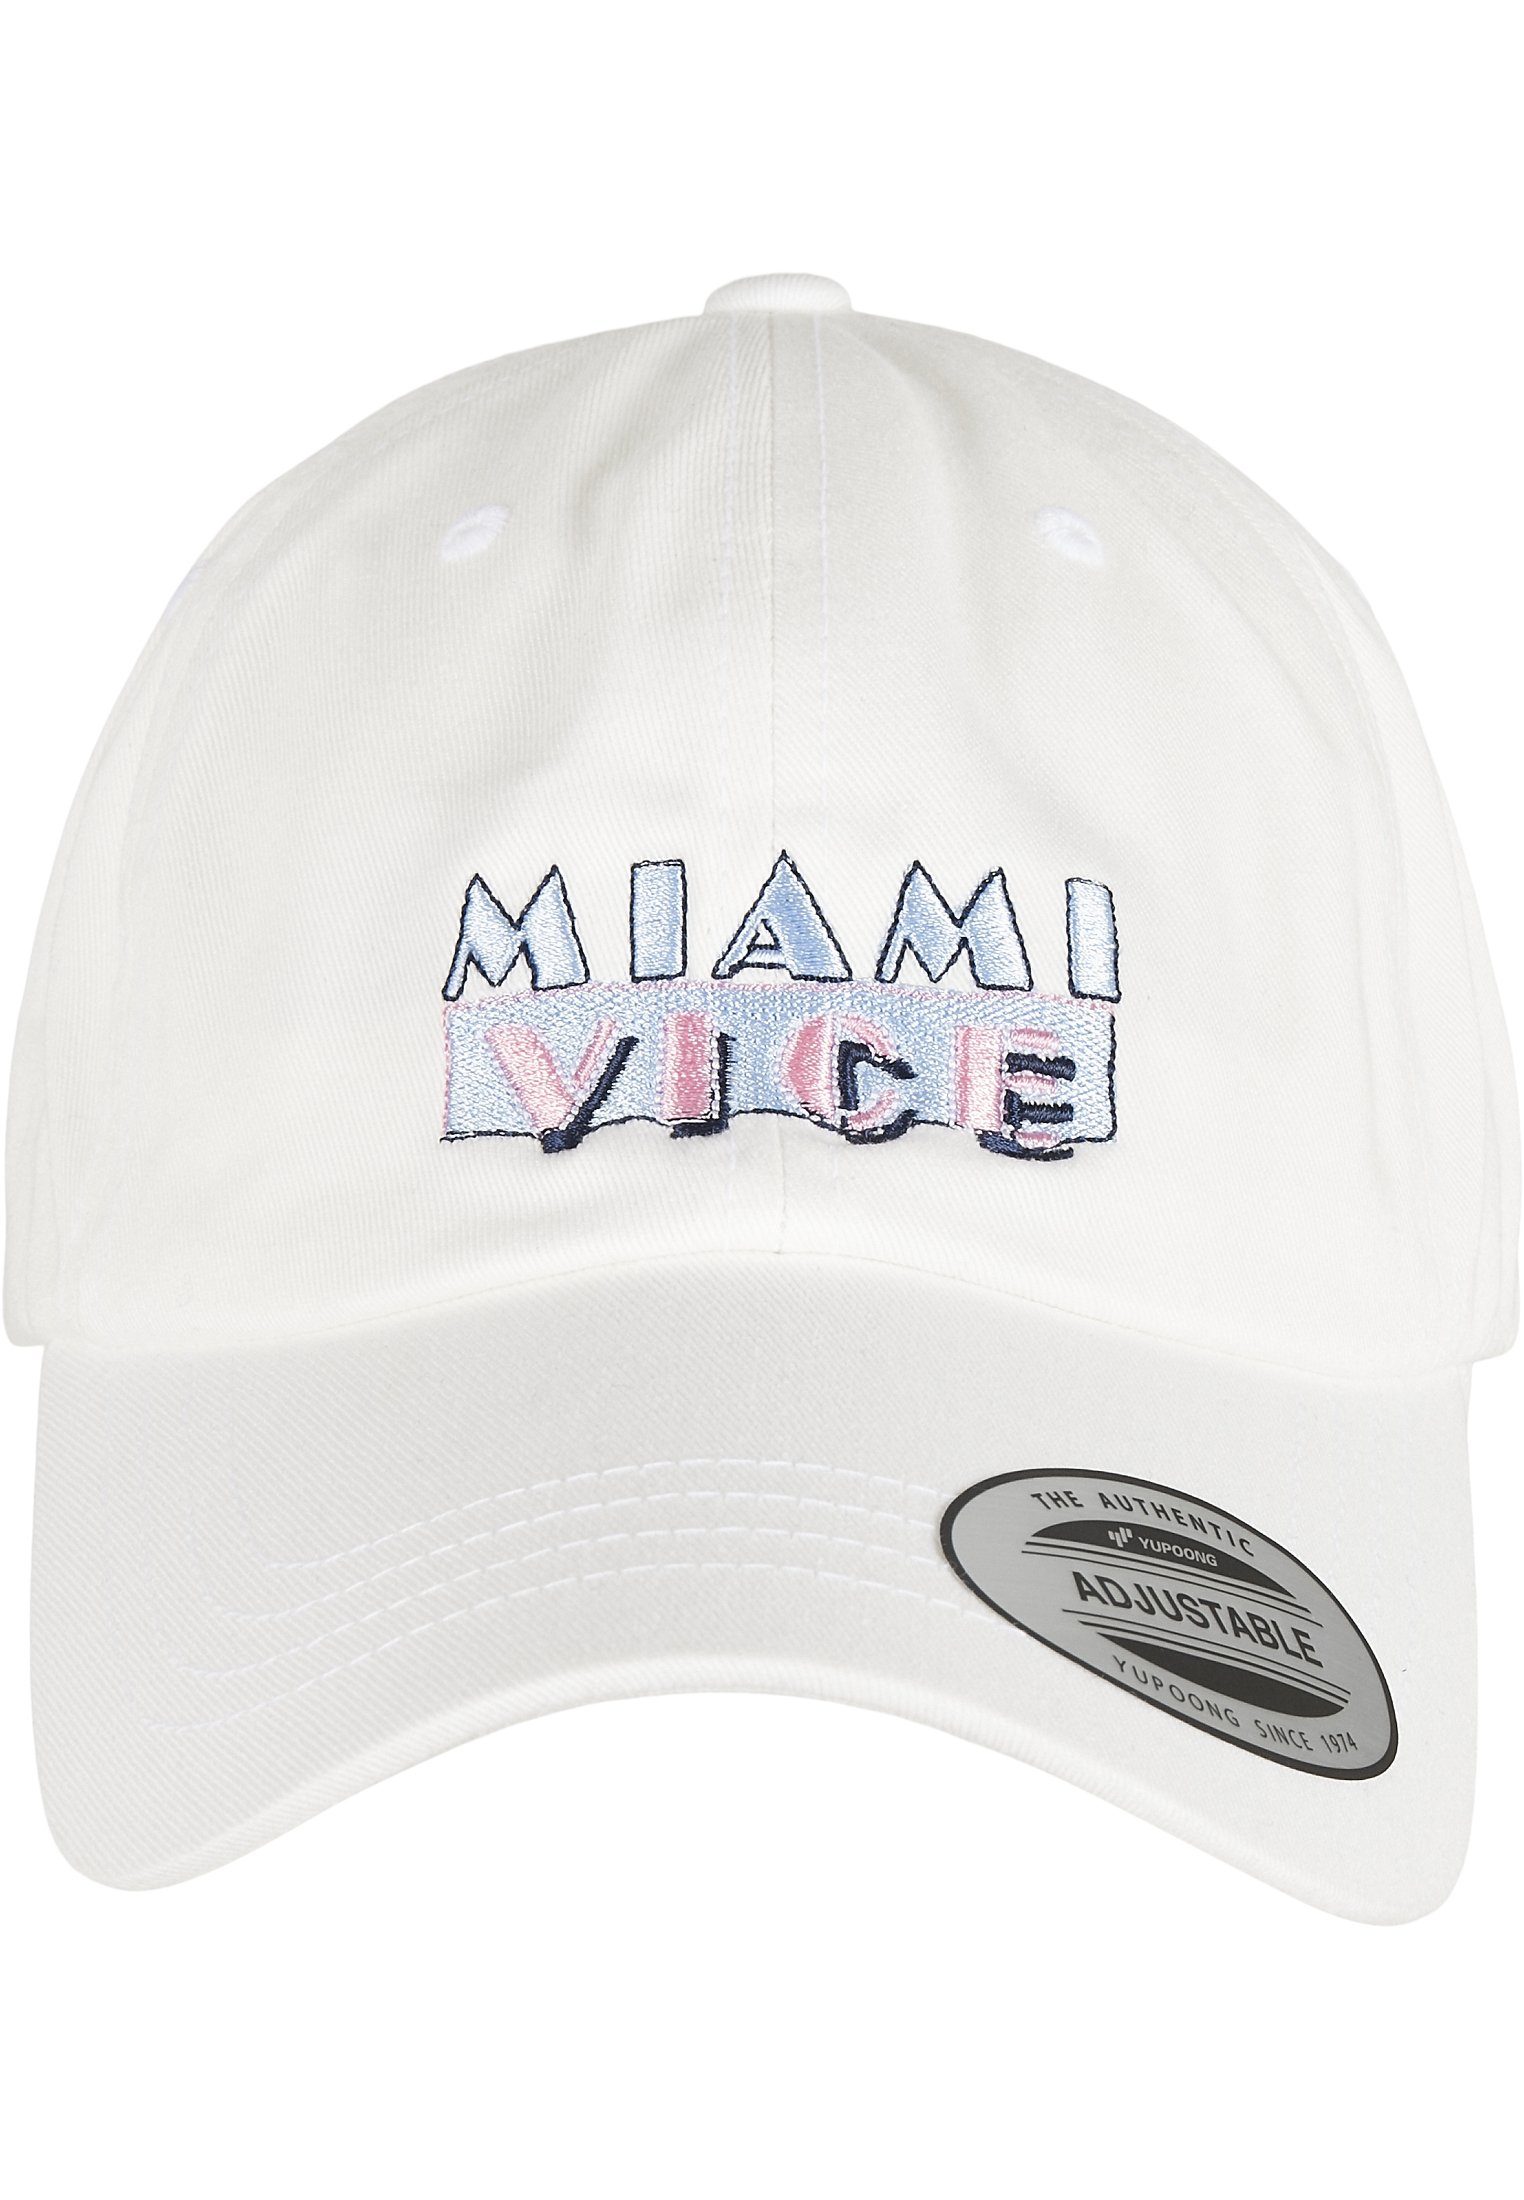 Logo Cap Caps Flex Miami Dad Merchcode Cap Vice